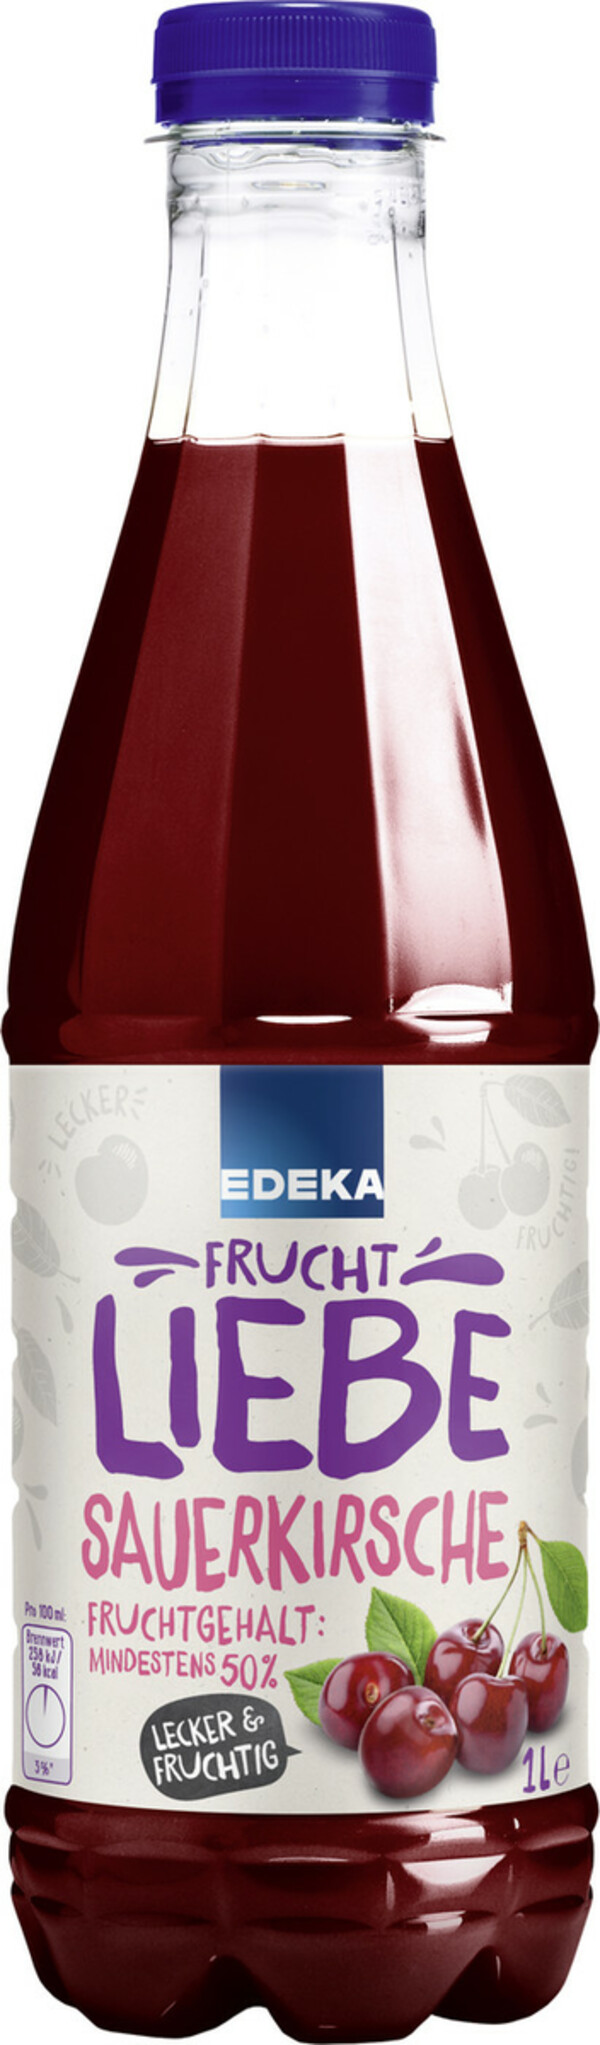 Bild 1 von EDEKA Fruchtliebe Sauerkirsche 1L